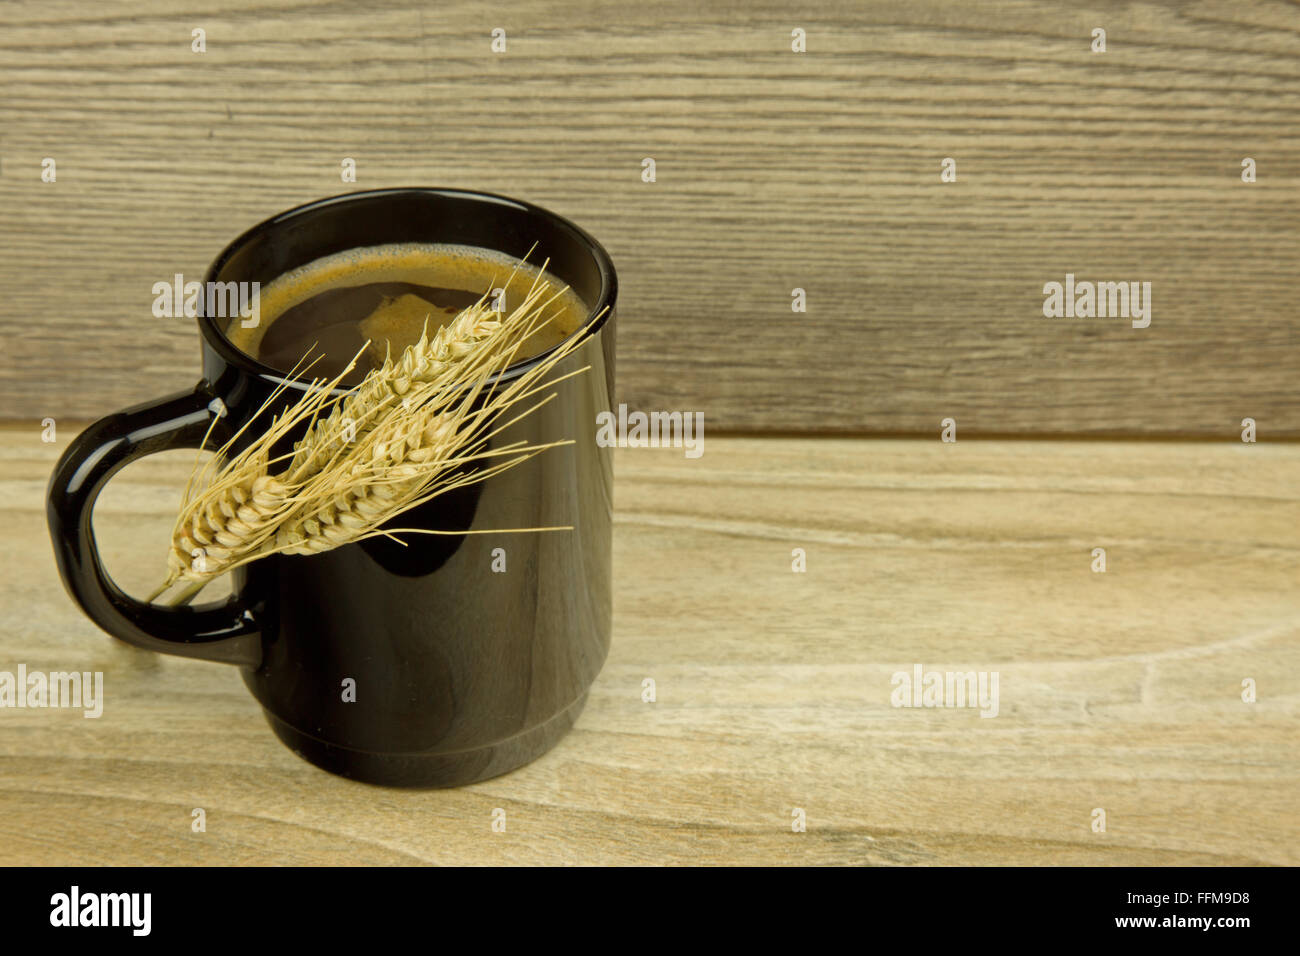 Tazza di caffè di cereali grano con spighe di grano di mais prodotti a base di cereali in verticale sulla tazza , sul vecchio tavolo in legno. Vista orizzontale. Foto Stock